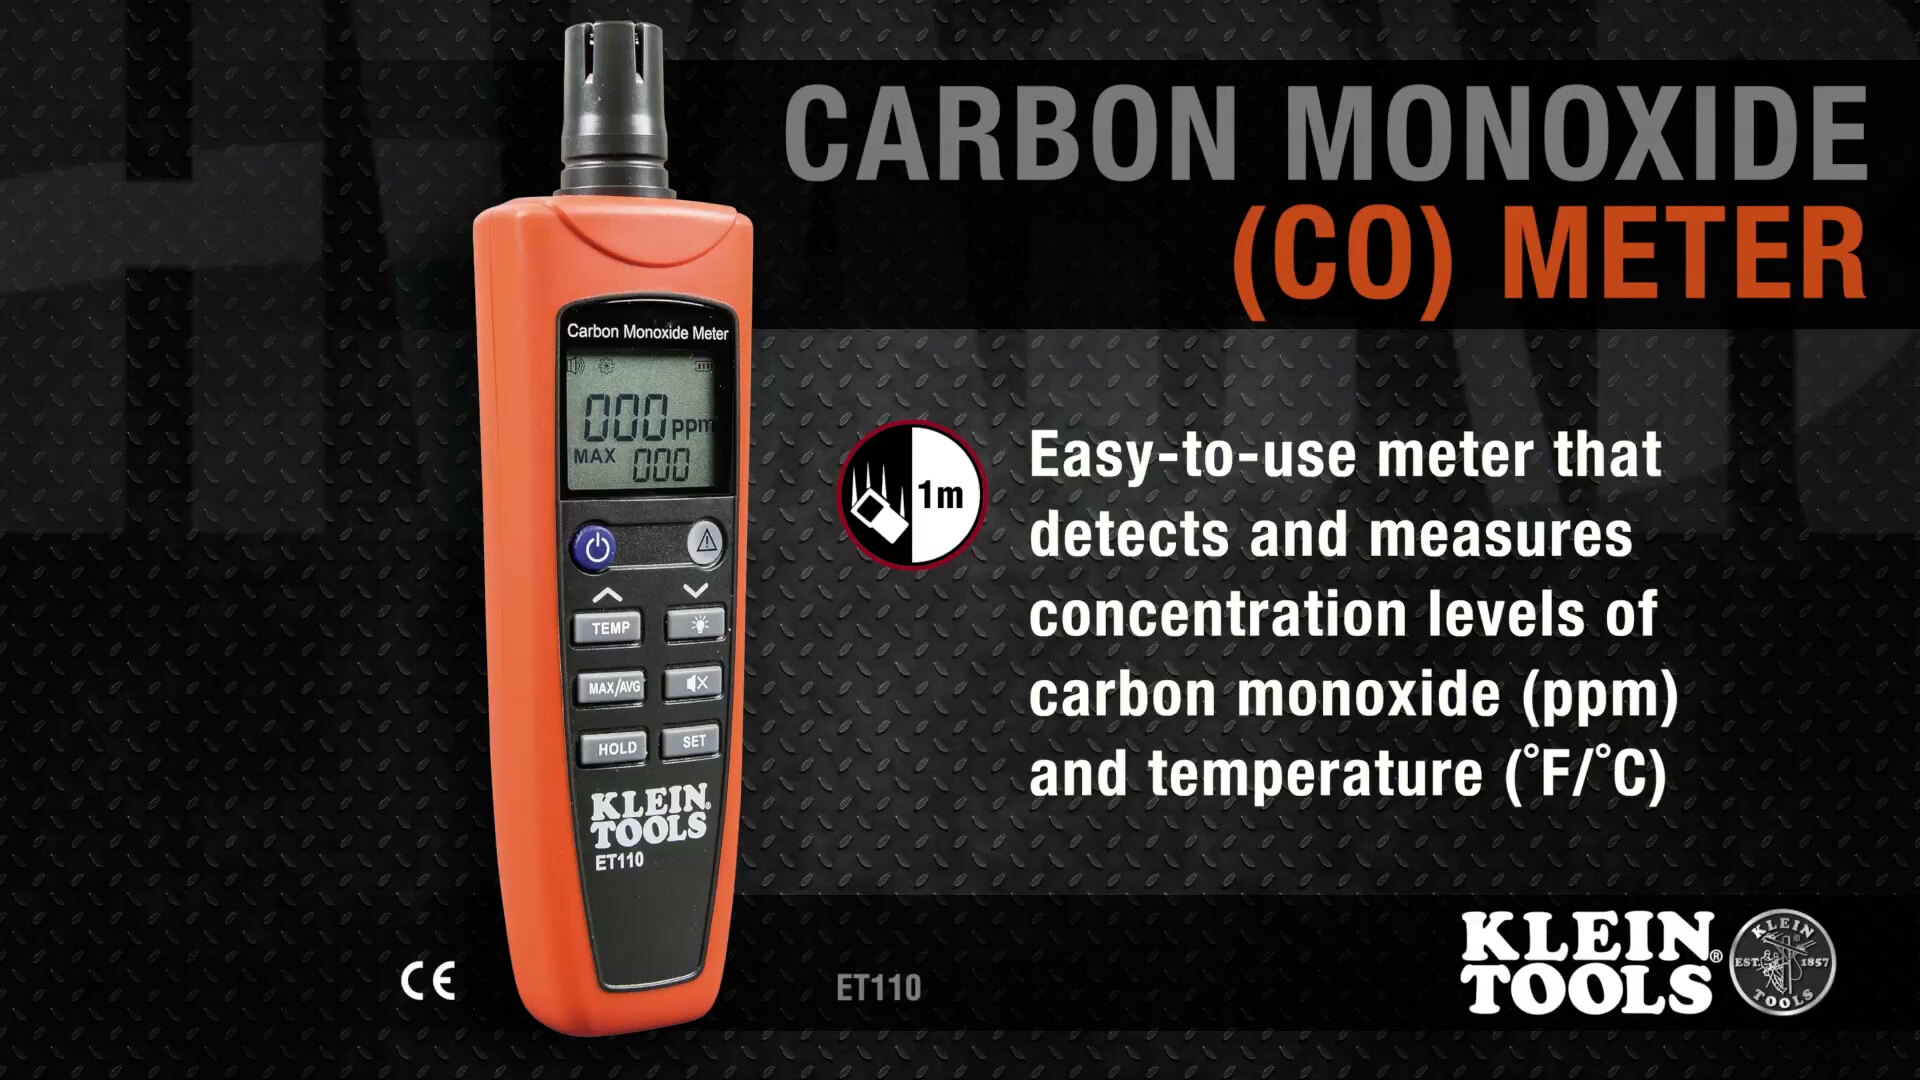 Klein Tools ET110 Carbon Monoxide (CO) Meter Overview Video